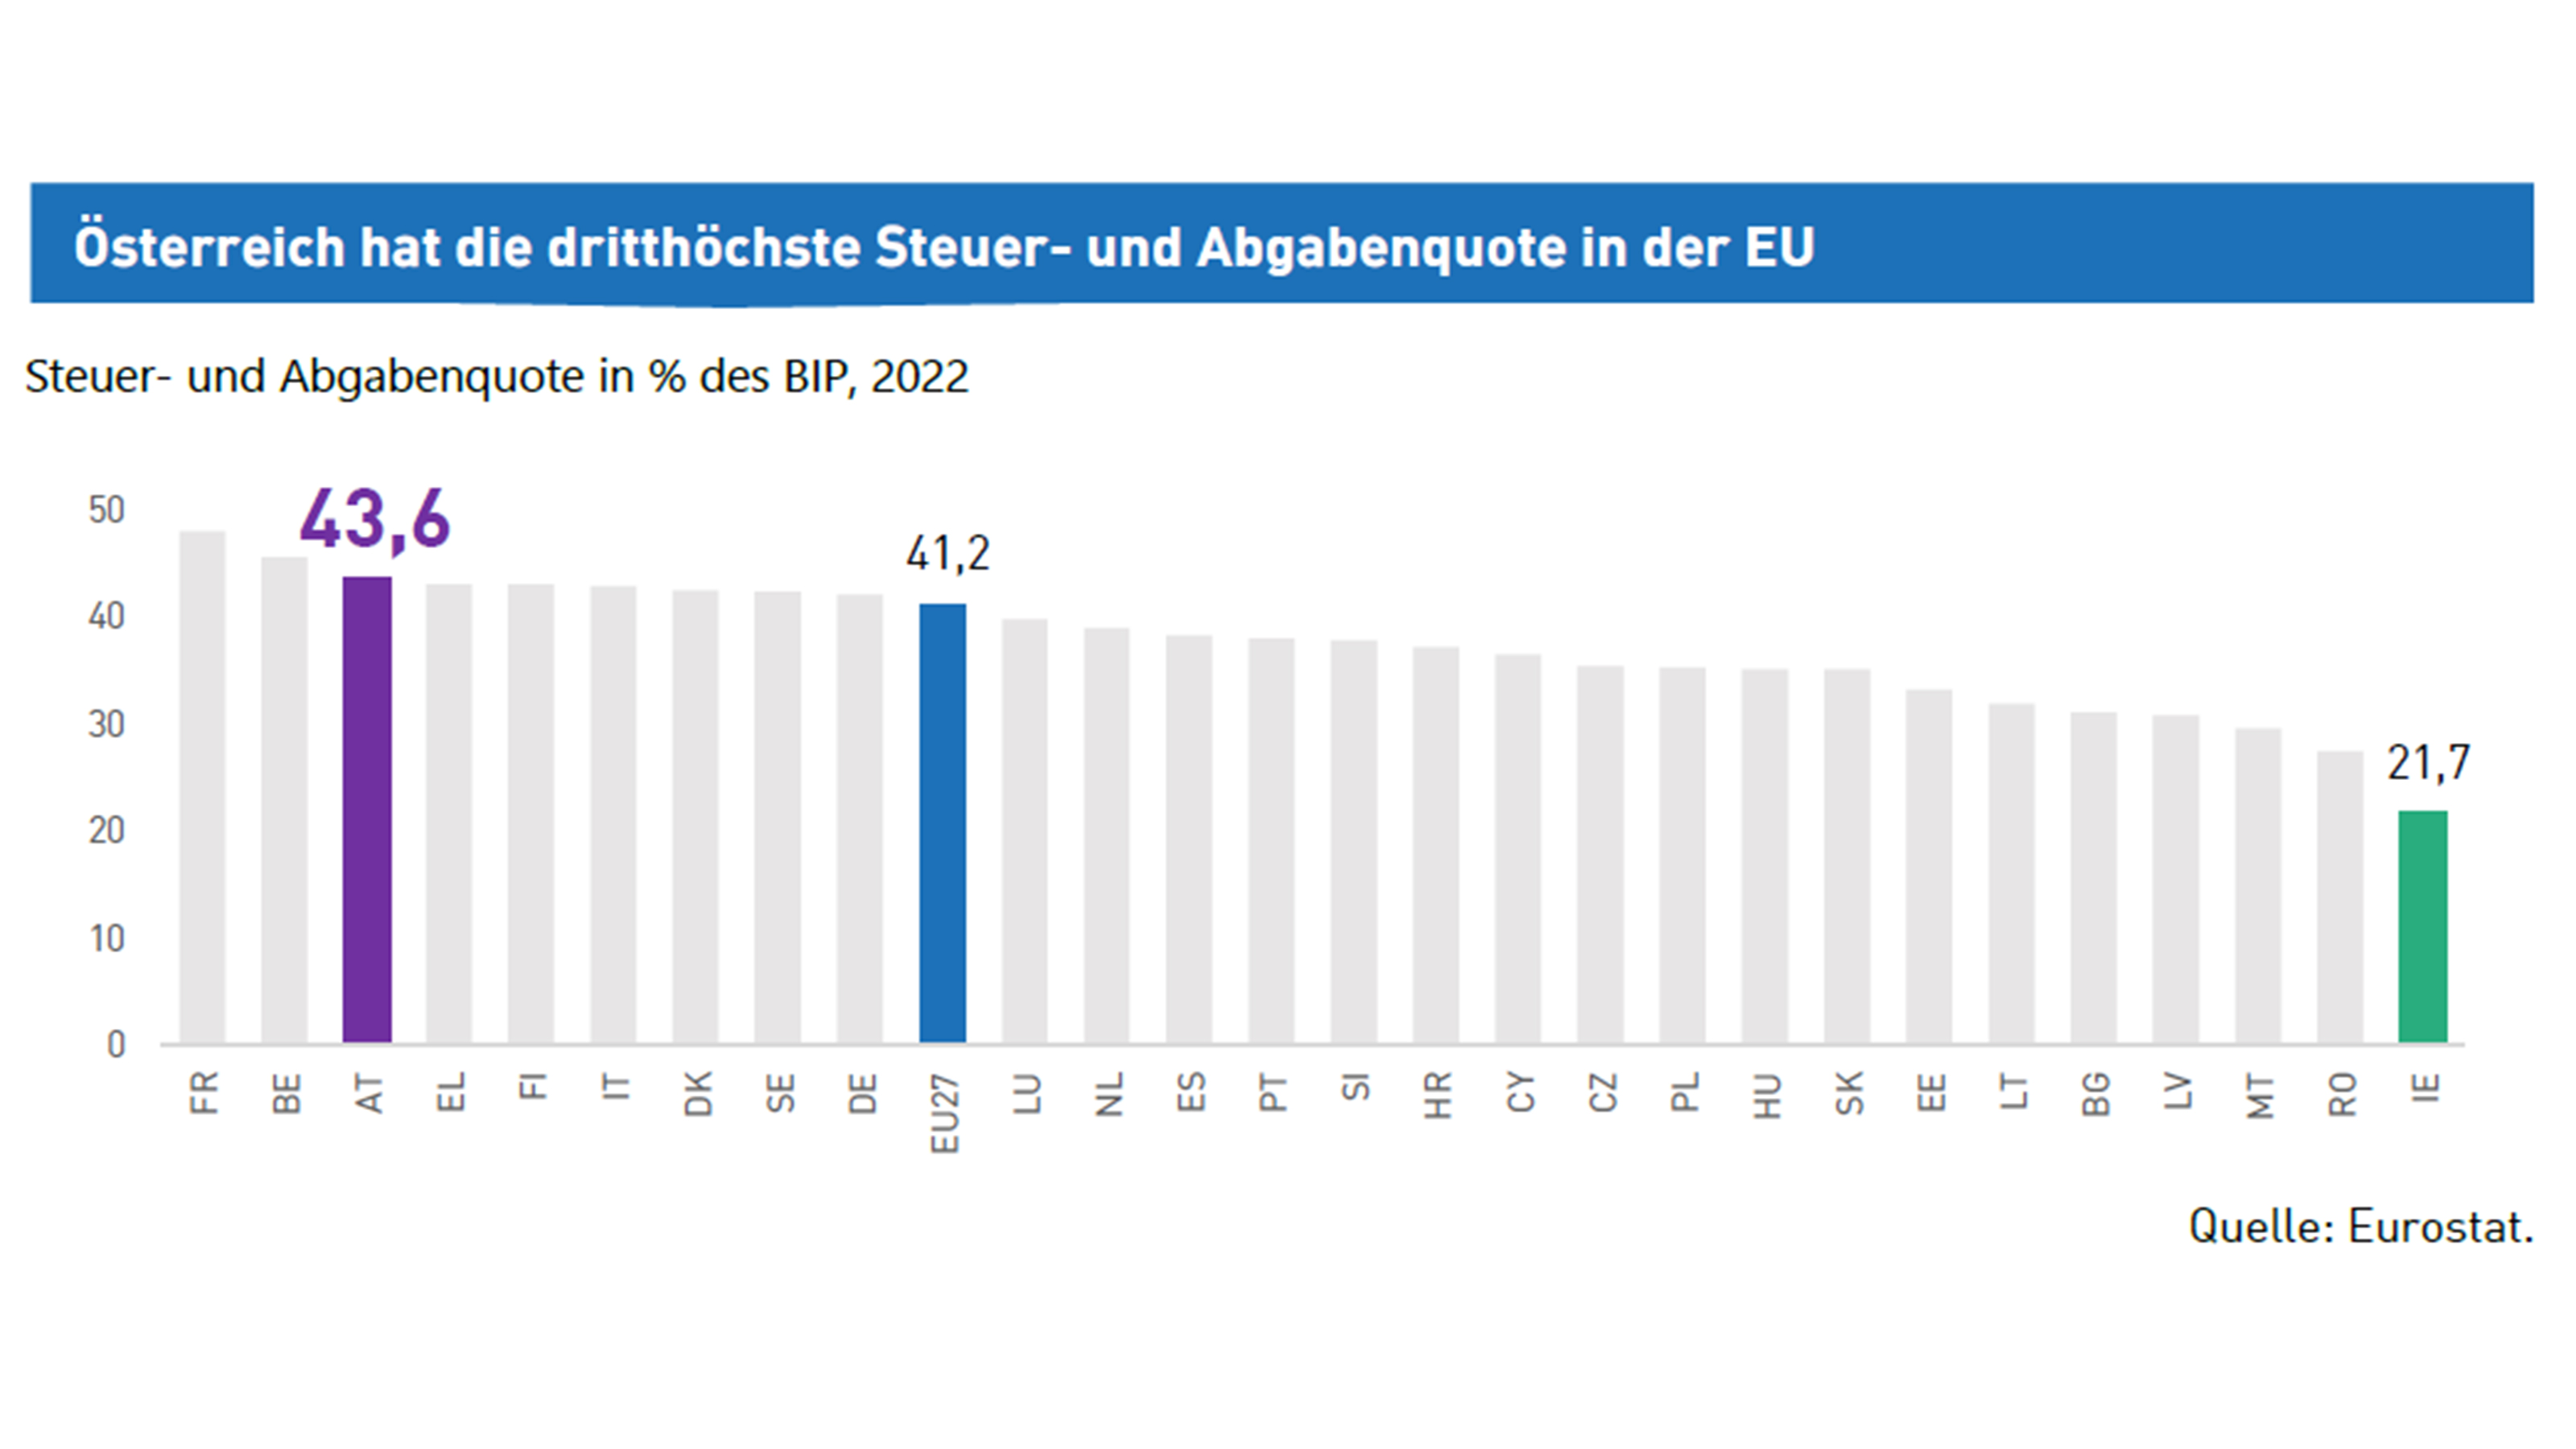 Diagramm Österreich hat die dritthöchste Steuer- und Abgabenquote in der EU, Zahlen 43,6, 41,2  und 21,7 farblich hervorgehoben, Quelle Eurostat